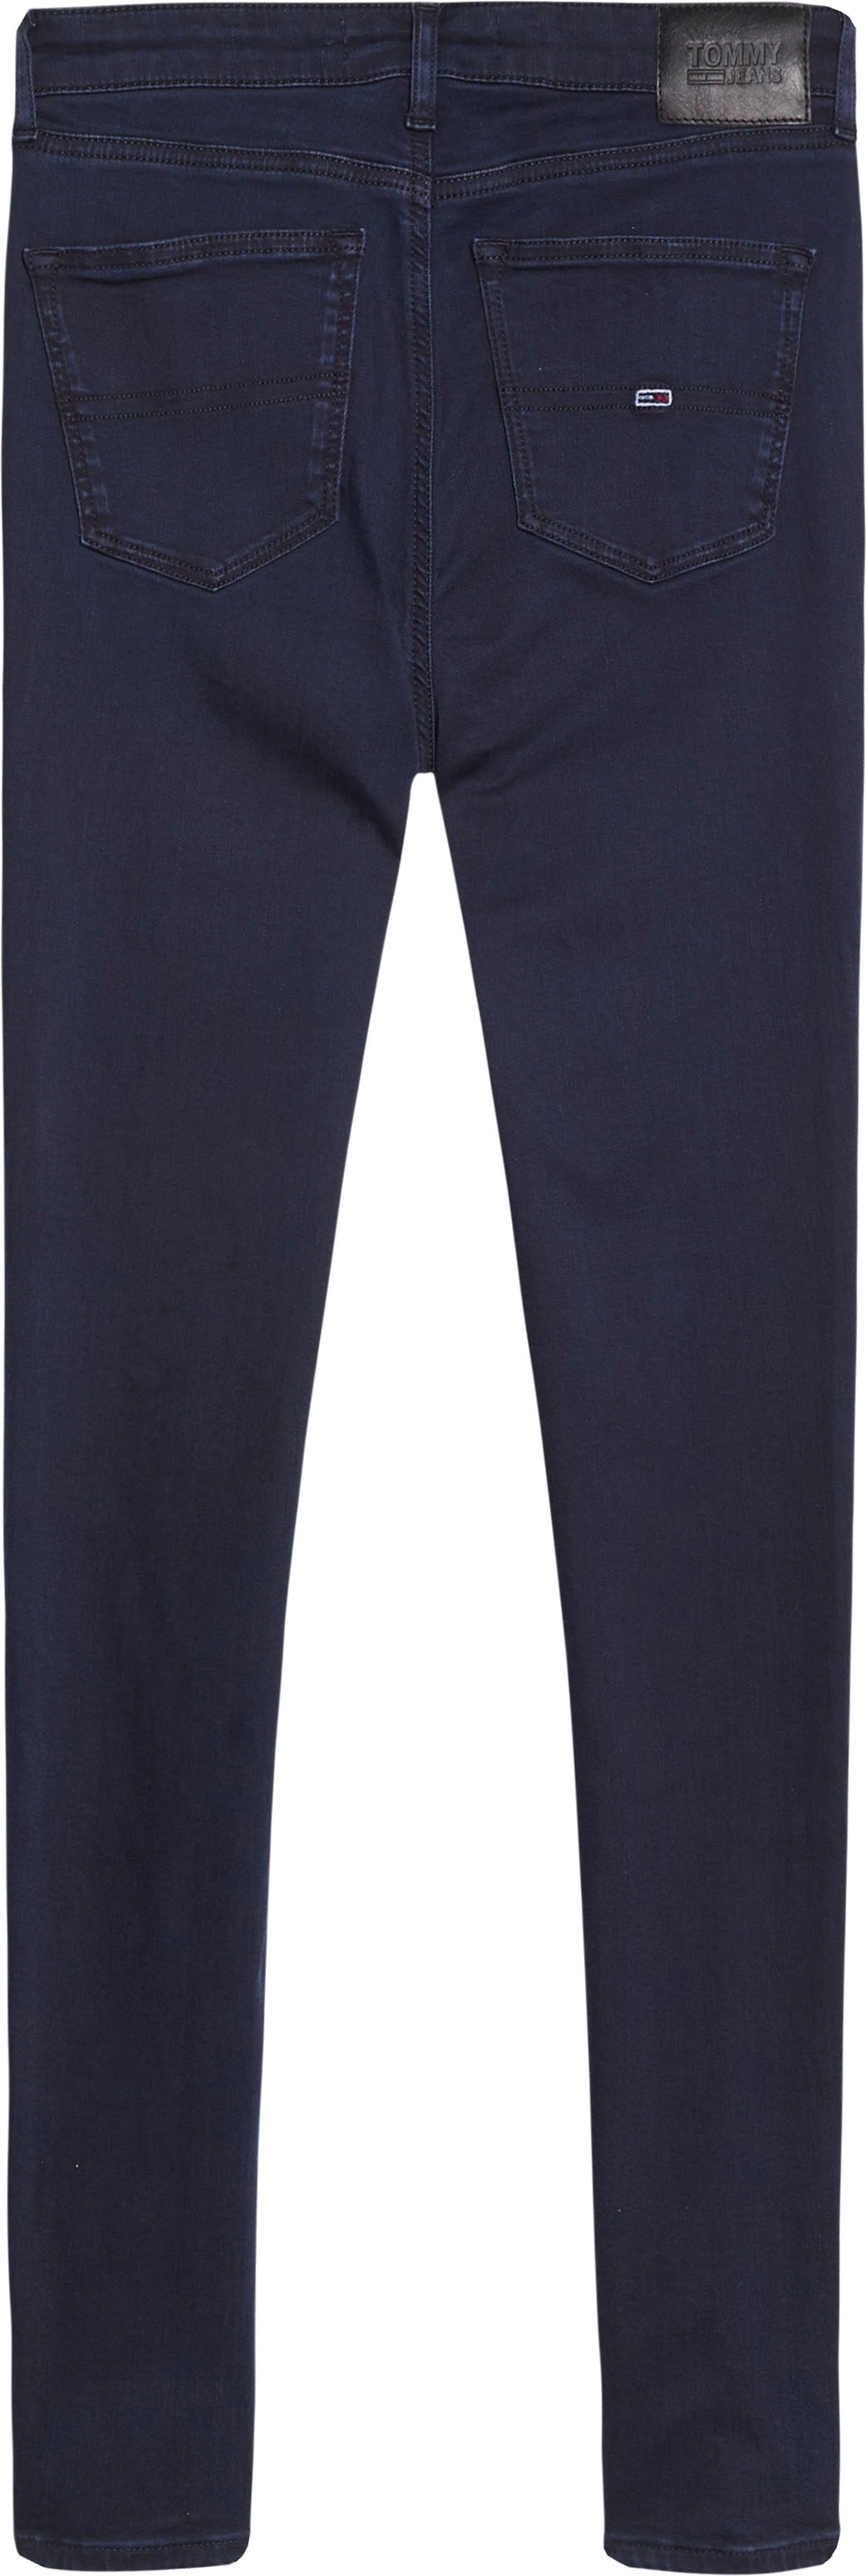 Jeans MR walking »NORA Tommy Skinny-fit-Jeans mit Stickereien bestellen | SKNY«, I\'m & Jeans Logo-Badge Tommy